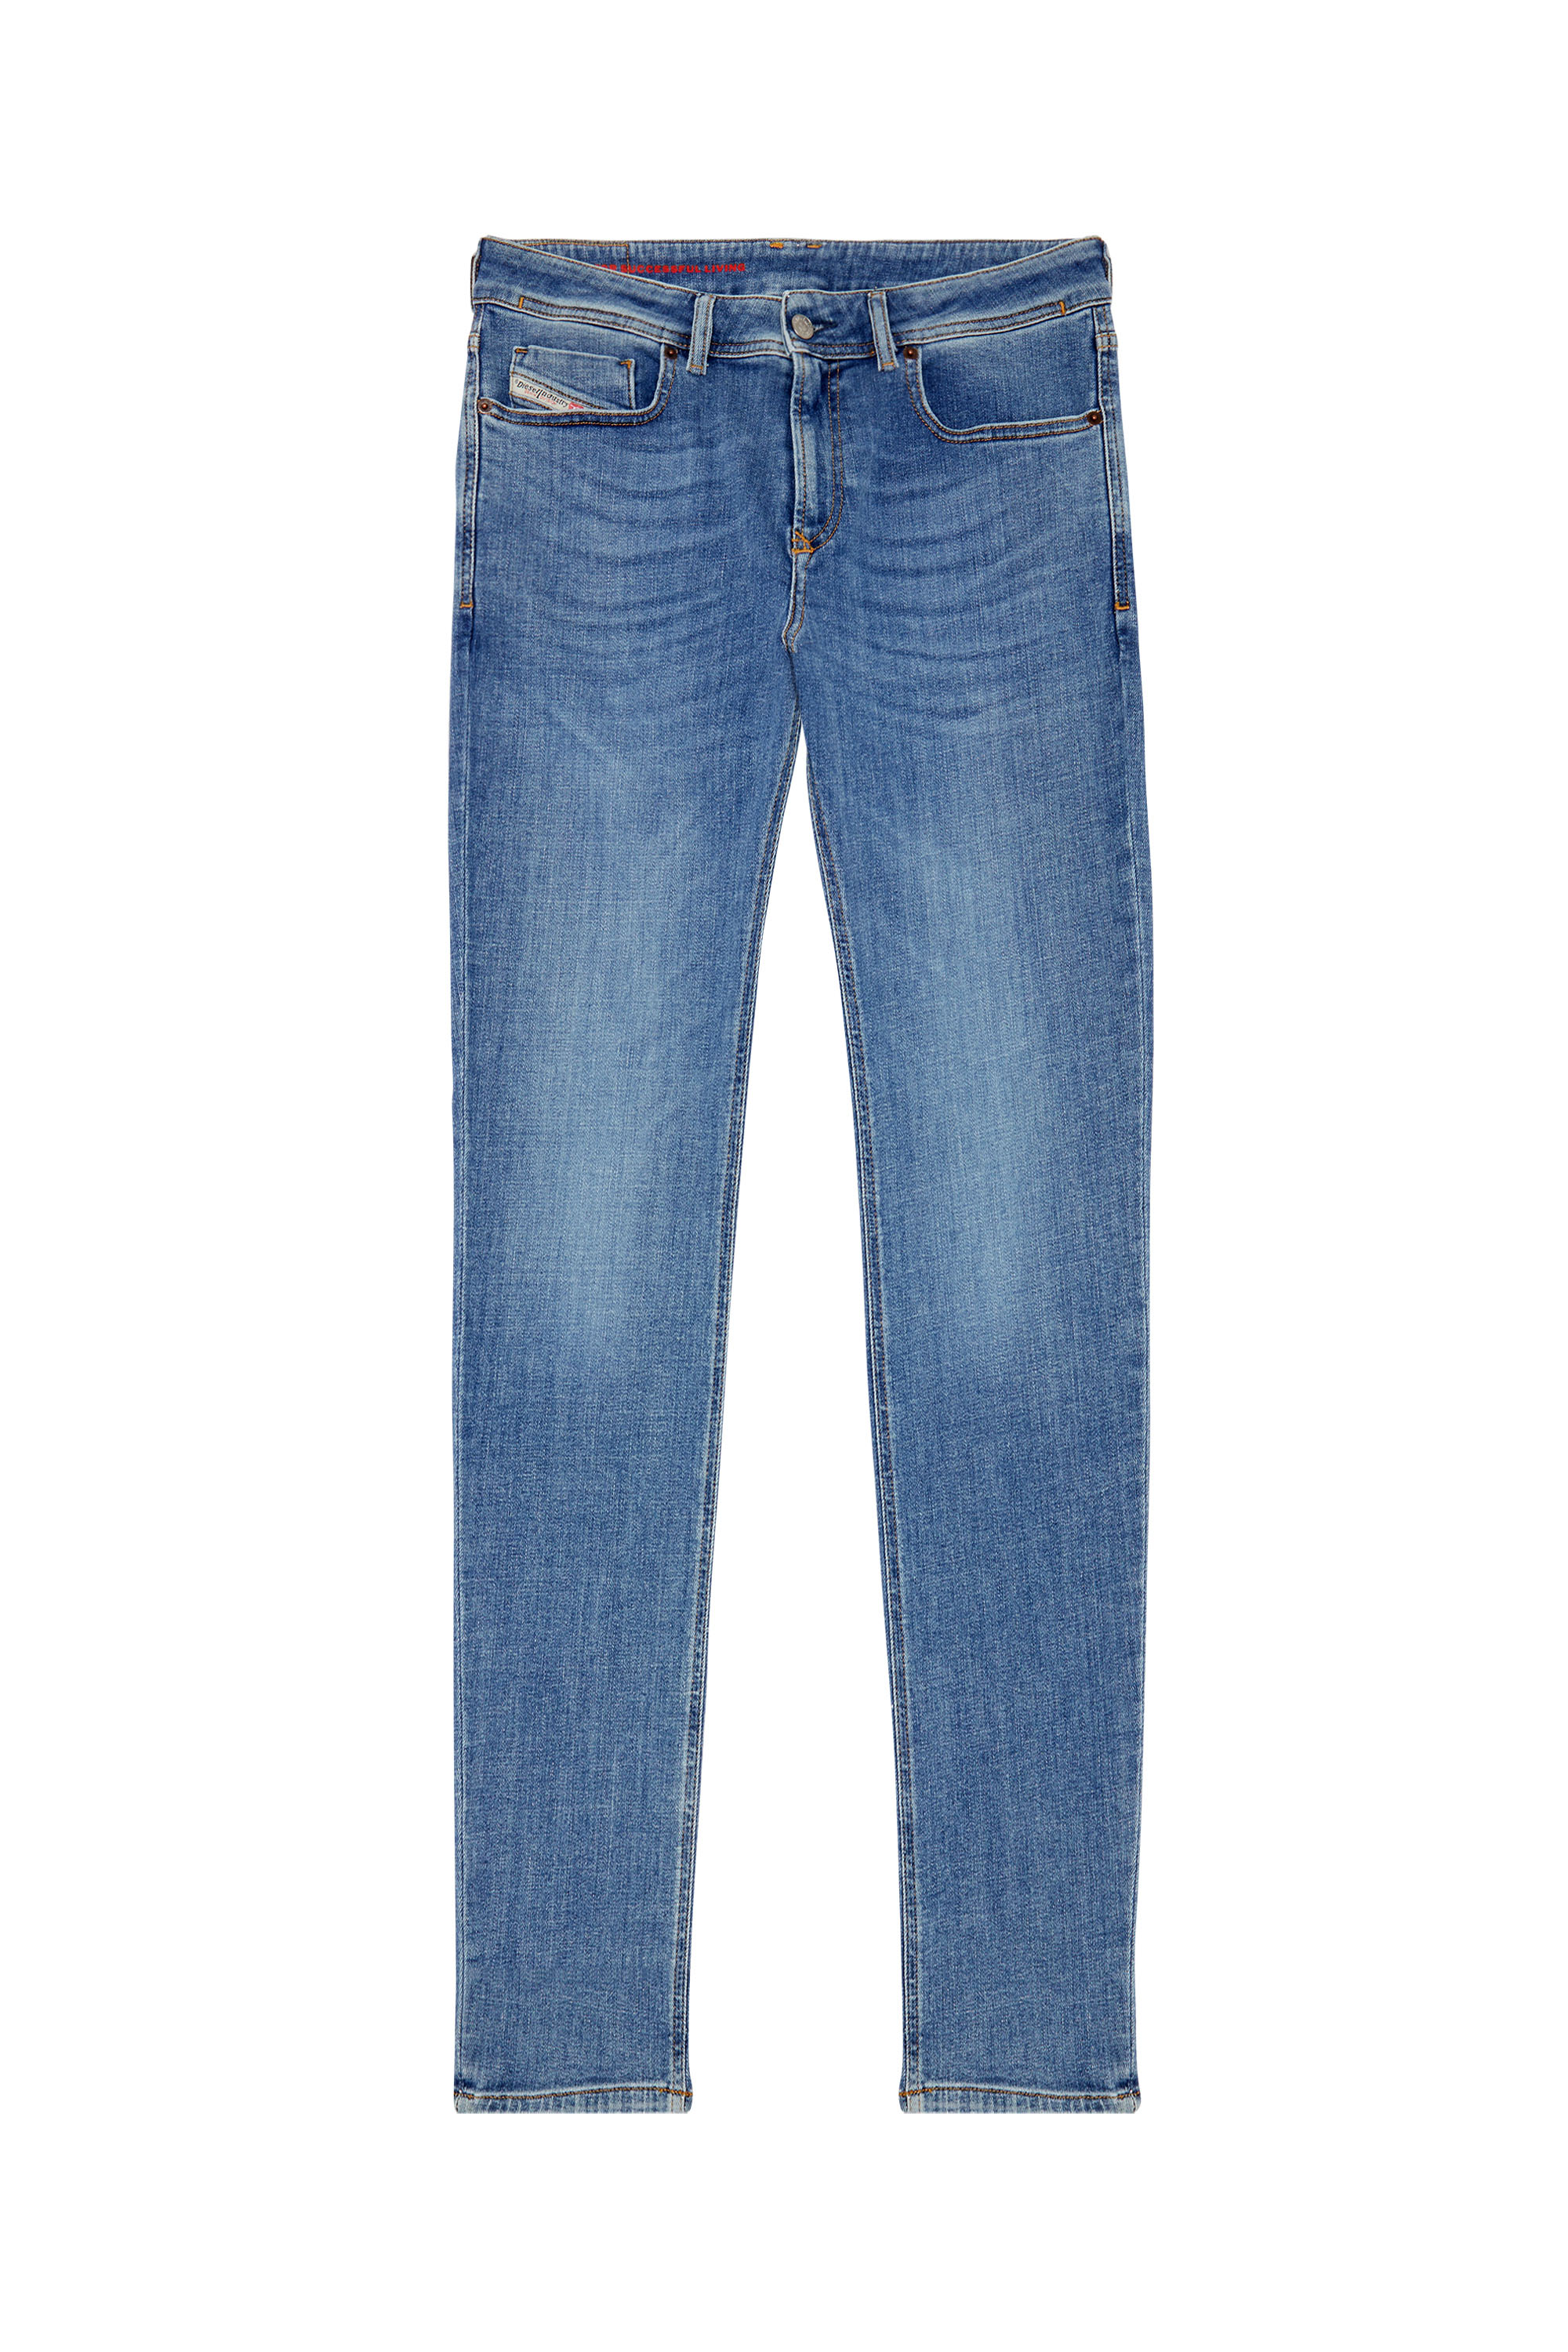 Diesel - Skinny Jeans 1979 Sleenker 09C01, Medium blue - Image 6